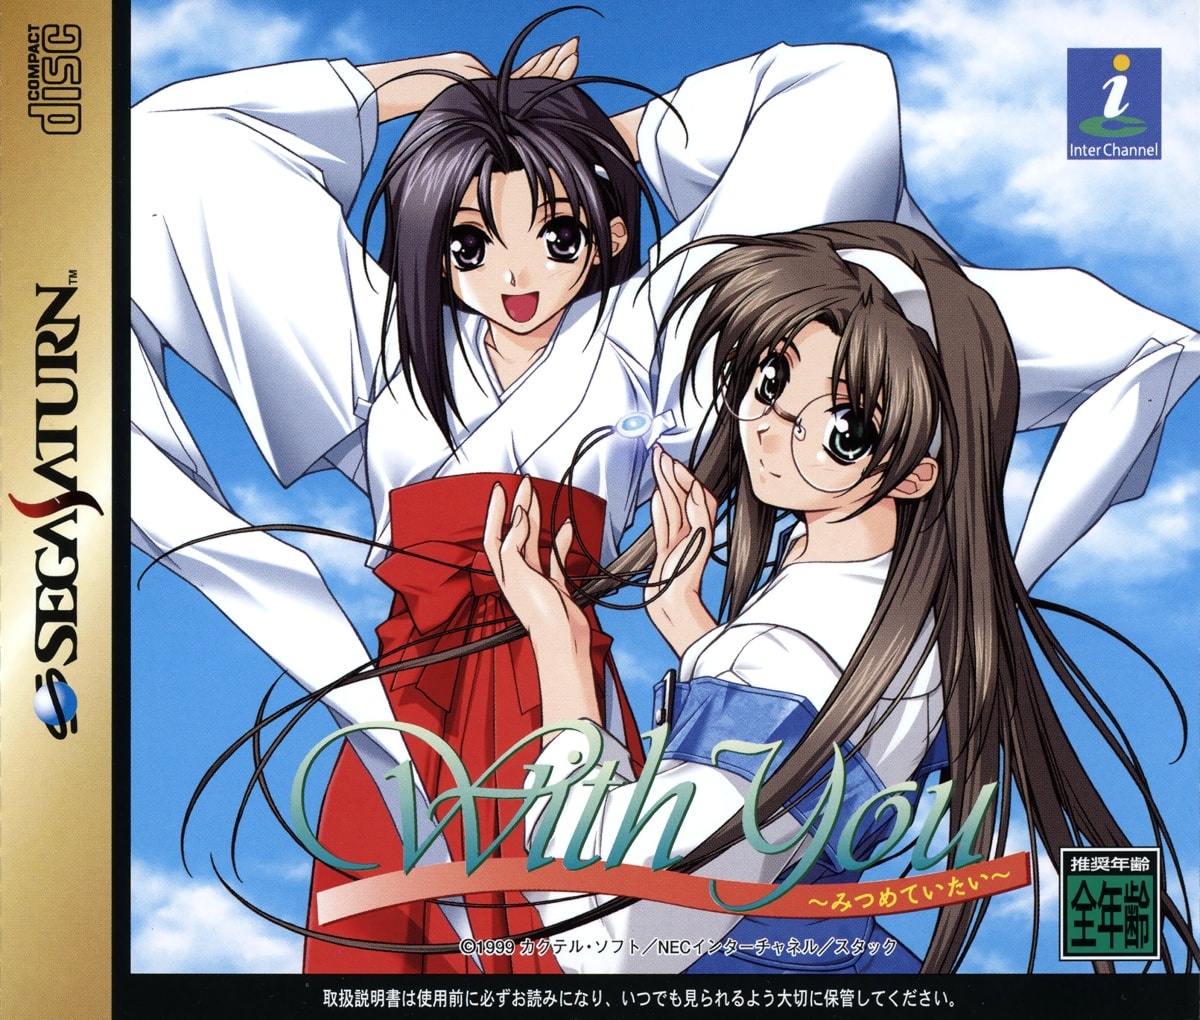 Capa do jogo With You: Mitsumete Itai